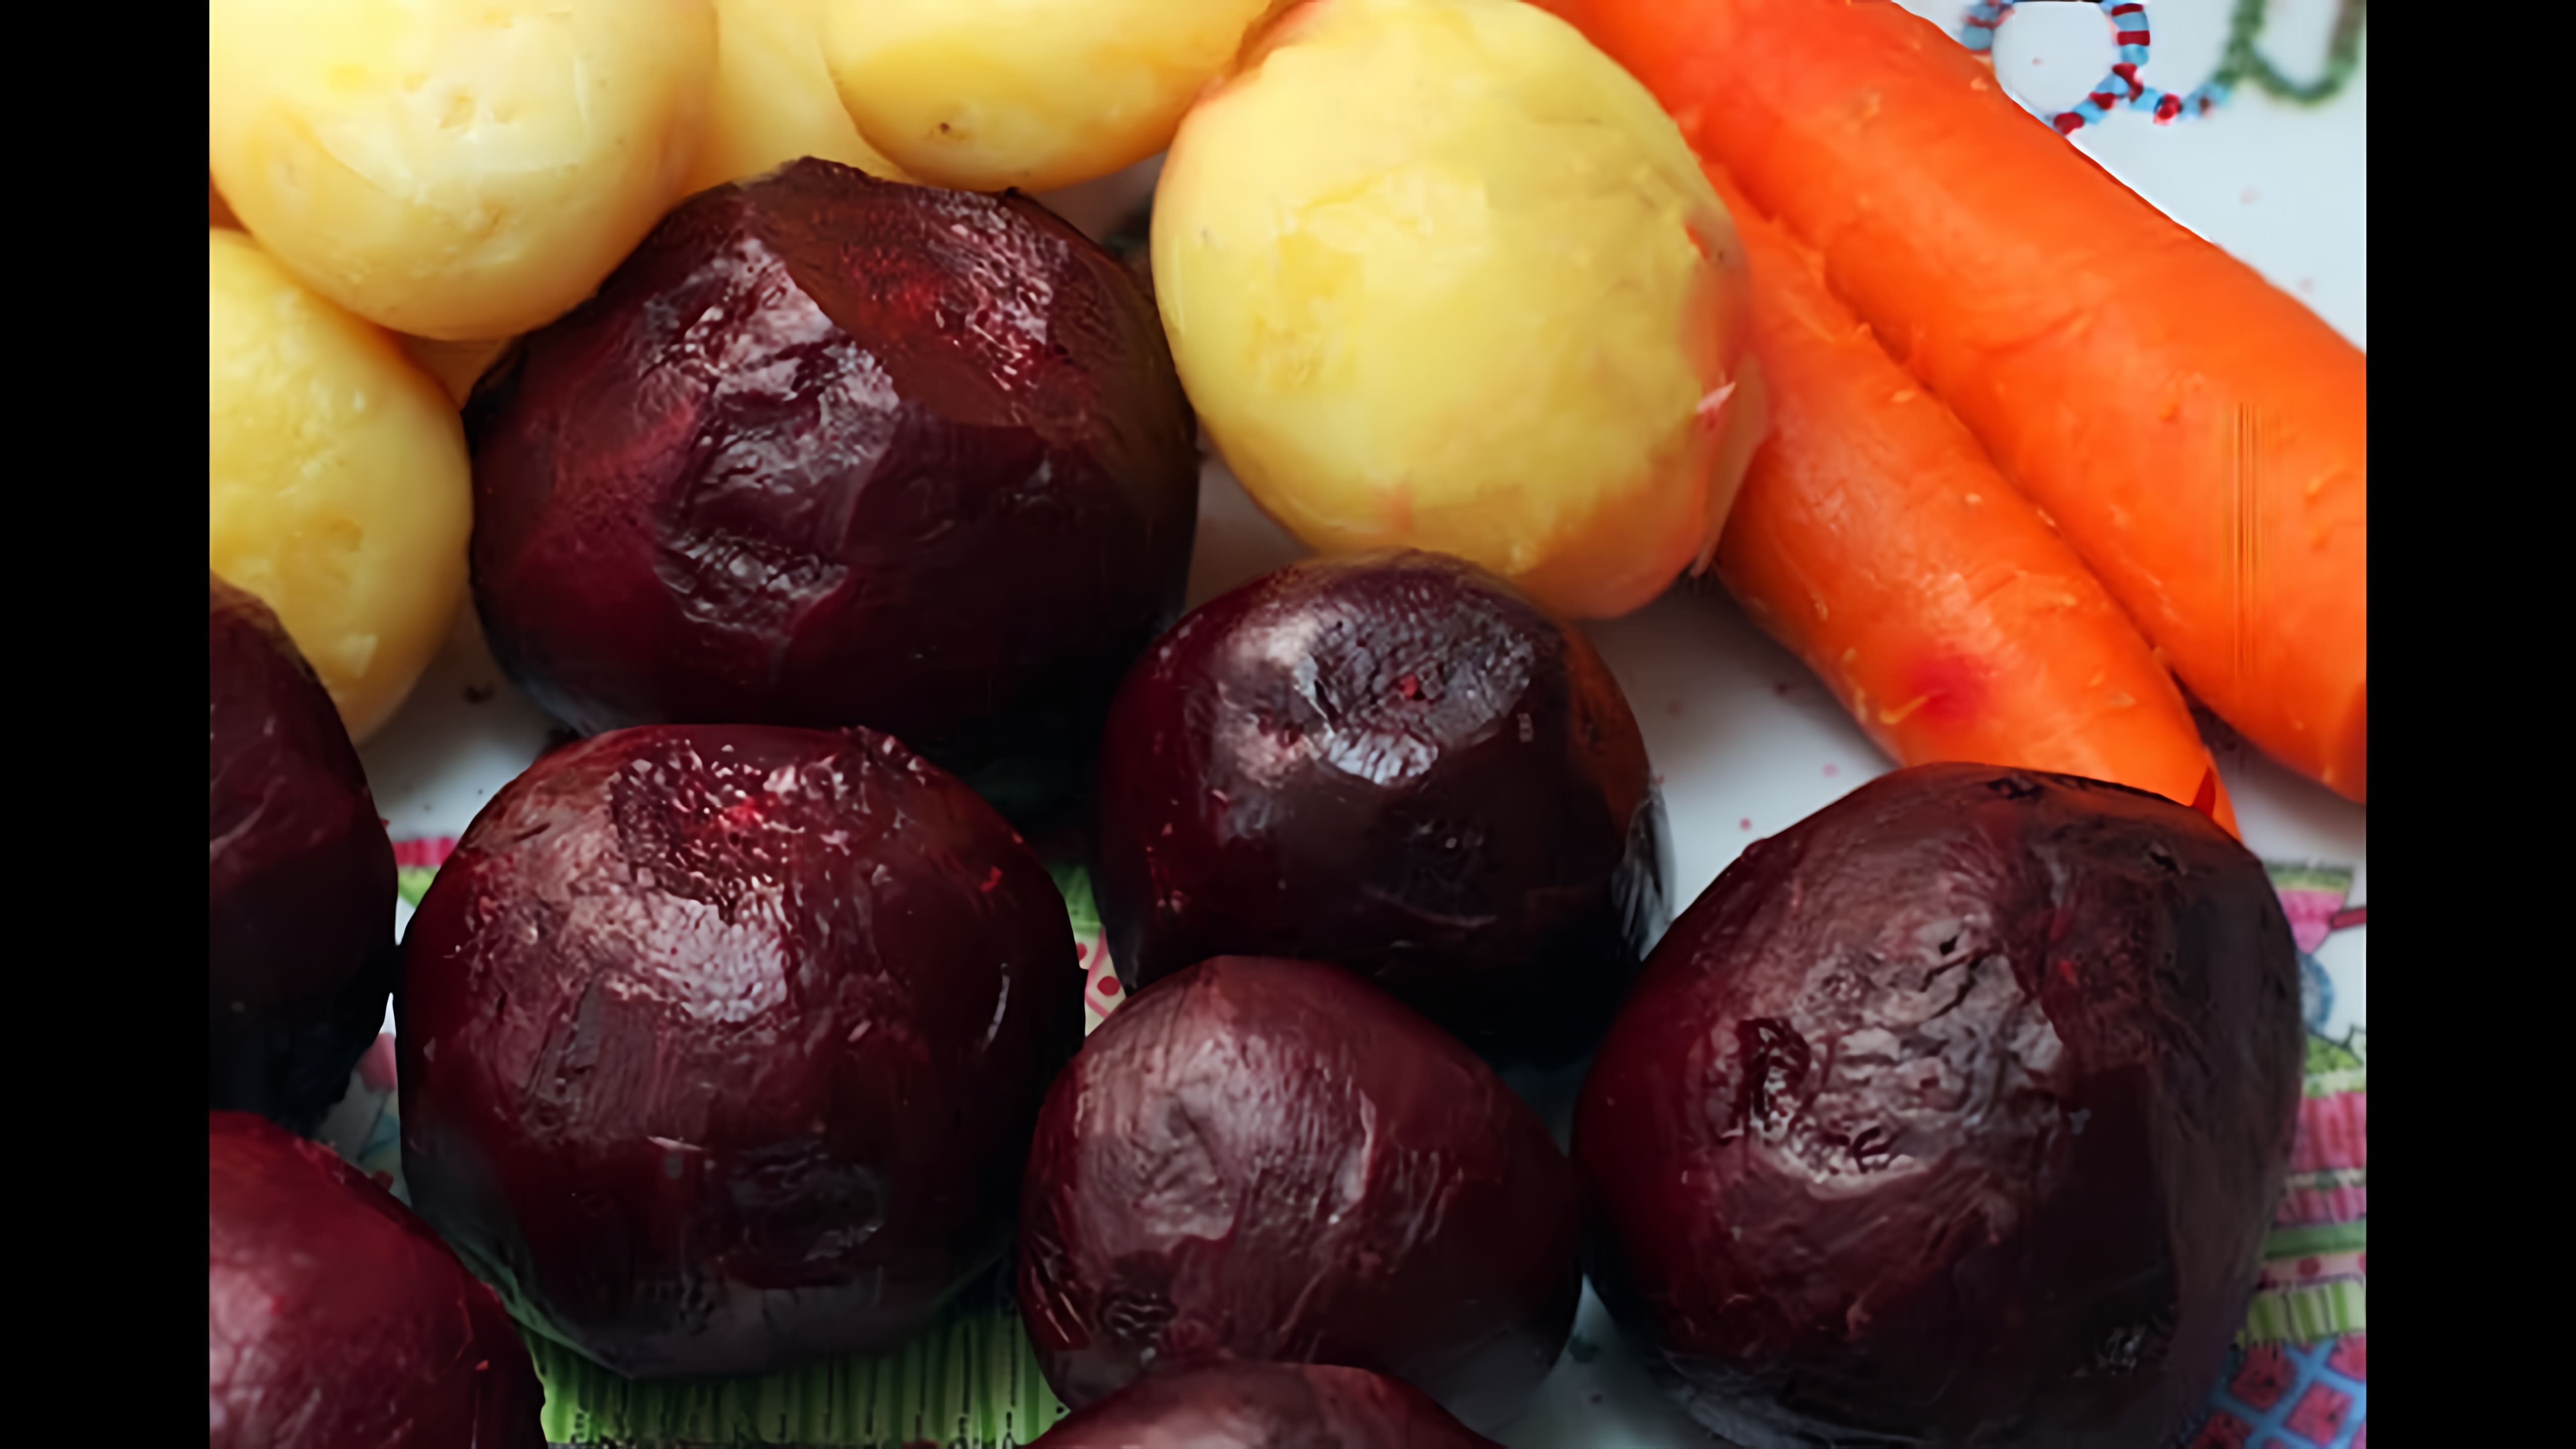 Видео: Как Запечь Овощи в Духовке для Винегрета, Селедки под Шубой и других салатов. Вкусно и Полезно.